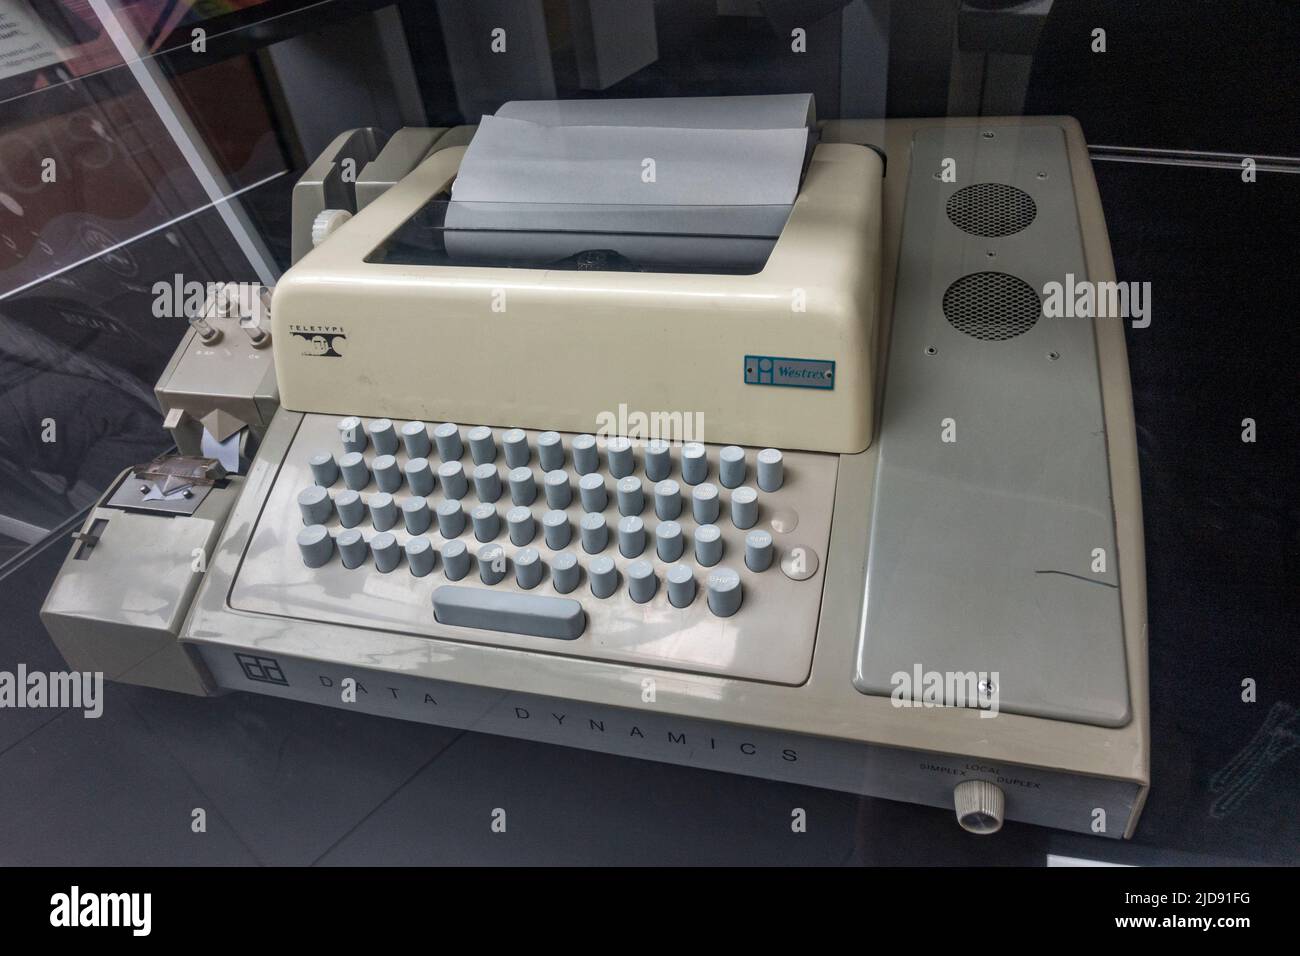 Ein Westrex Teletype-Terminal, das in einem Medienmuseum ausgestellt ist. Stockfoto